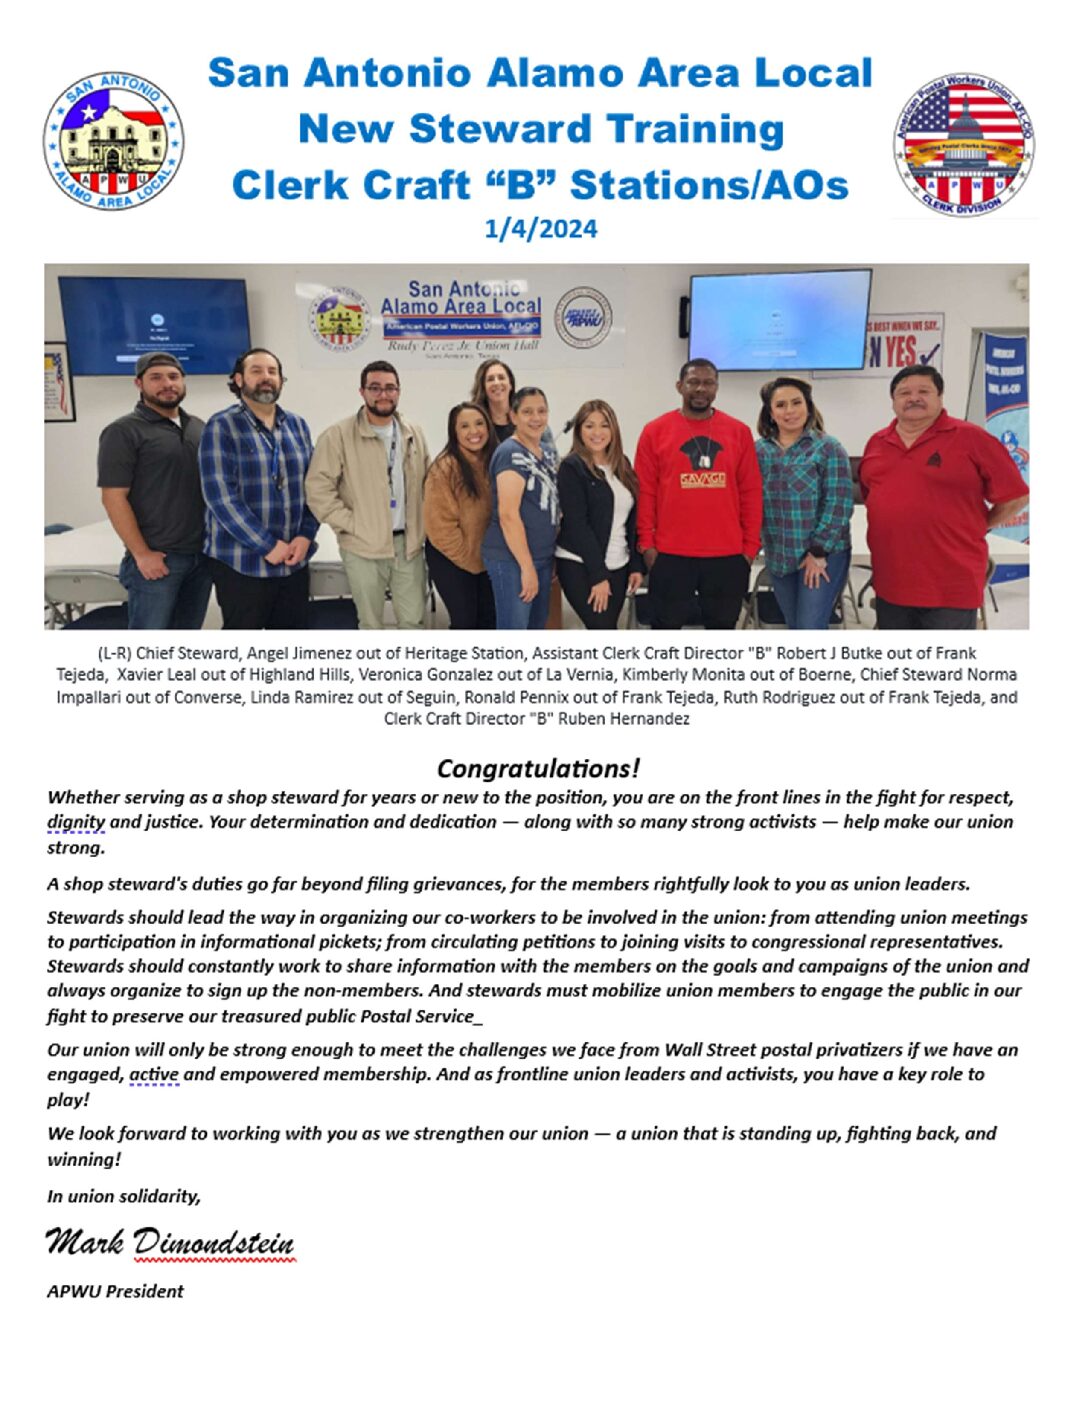 Clerk Craft New Steward Training 1/4/24 - 